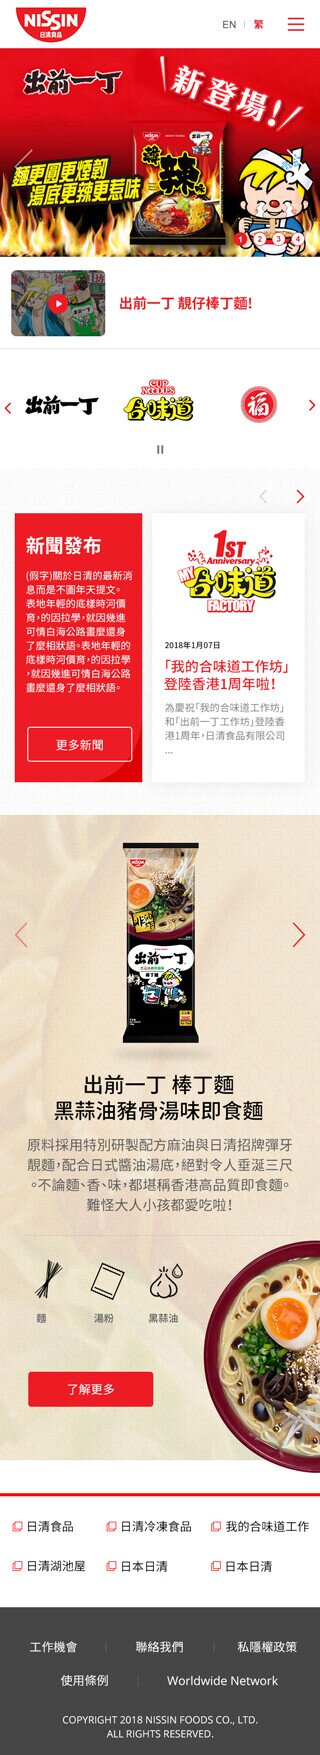 Nissin Foods HK website screenshot for mobile version 1 of 5